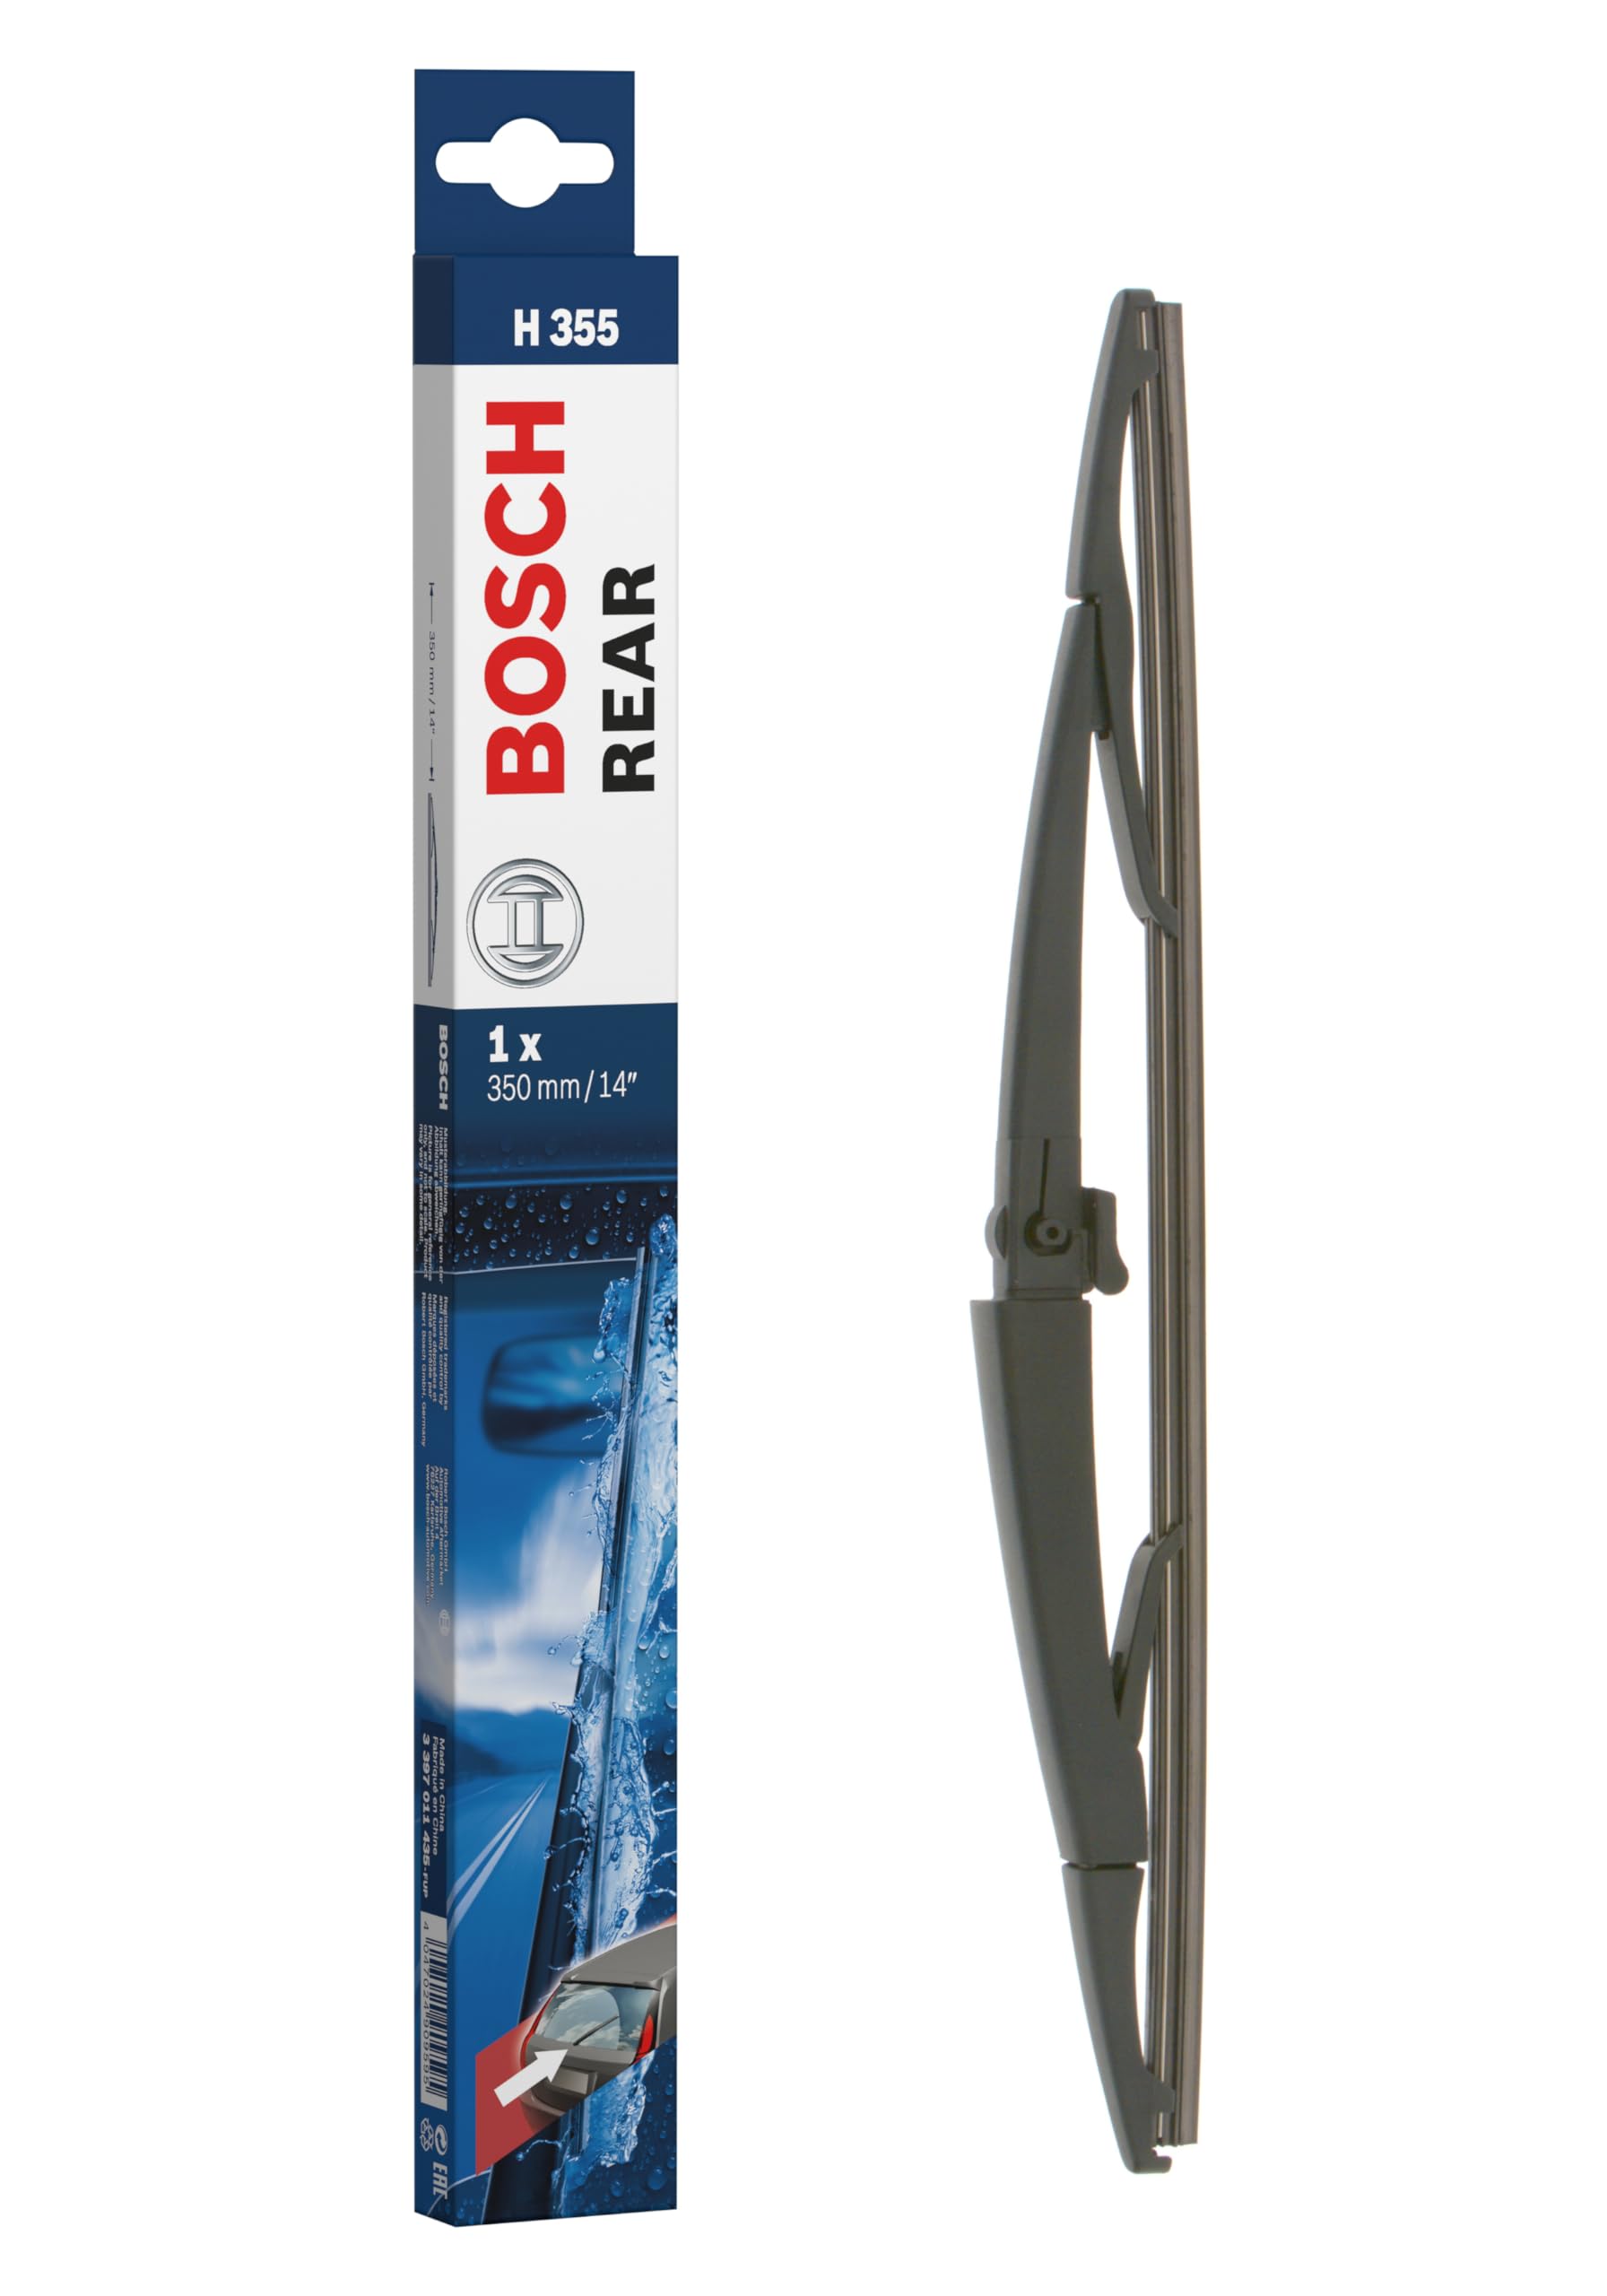 Bosch Scheibenwischer Rear H355, Länge: 350mm – Scheibenwischer für Heckscheibe von Bosch Automotive